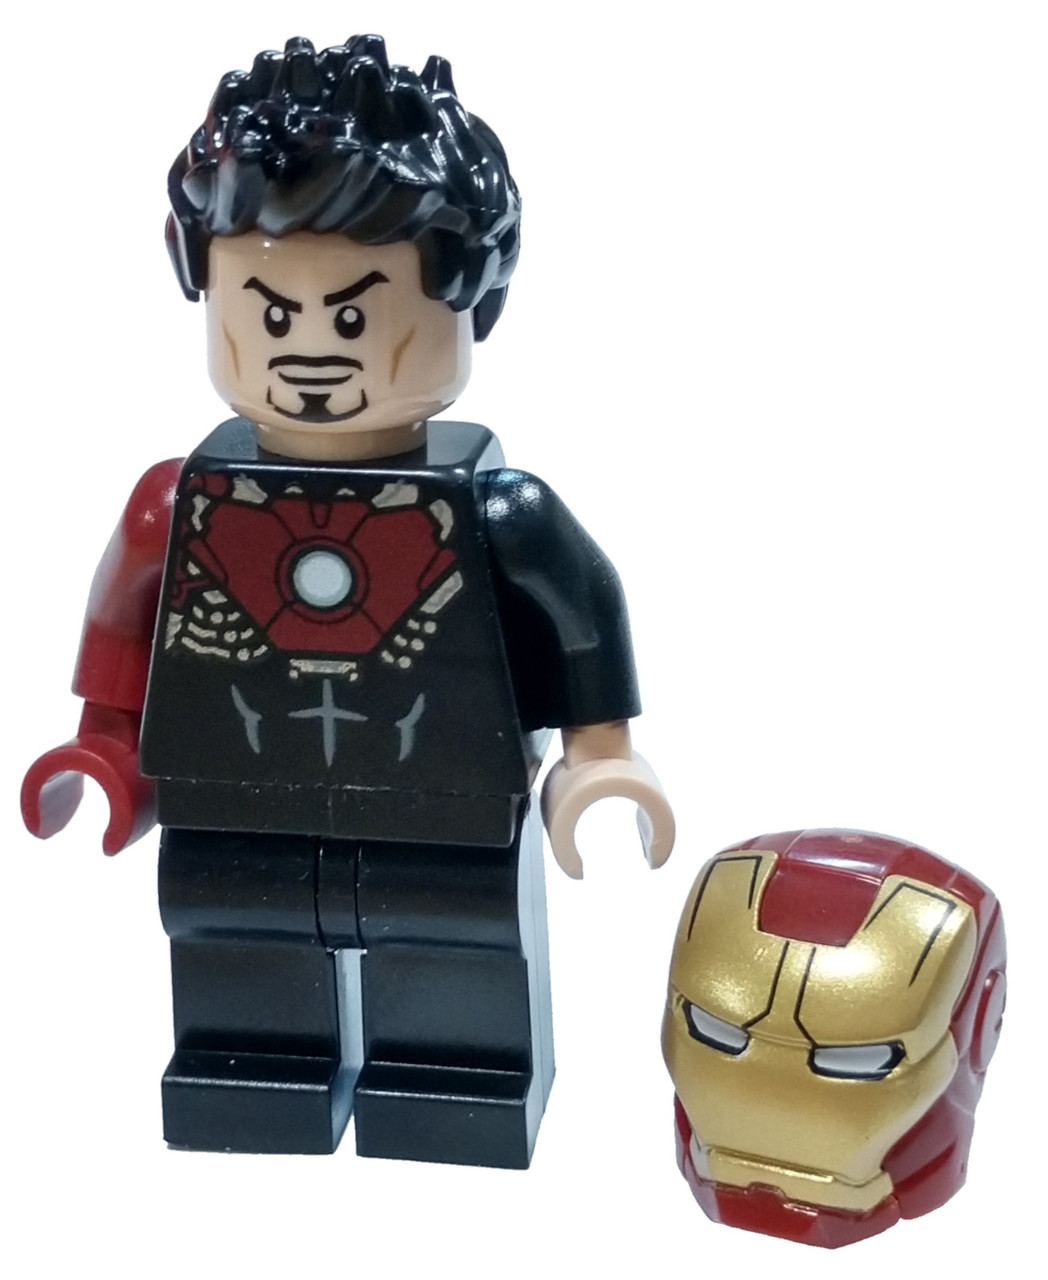 Lego Marvel Super Heroes Avengers Tony Stark Minifigure Black Iron Man Suit Loose Toywiz - tony stark iron man roblox tony stark iron man